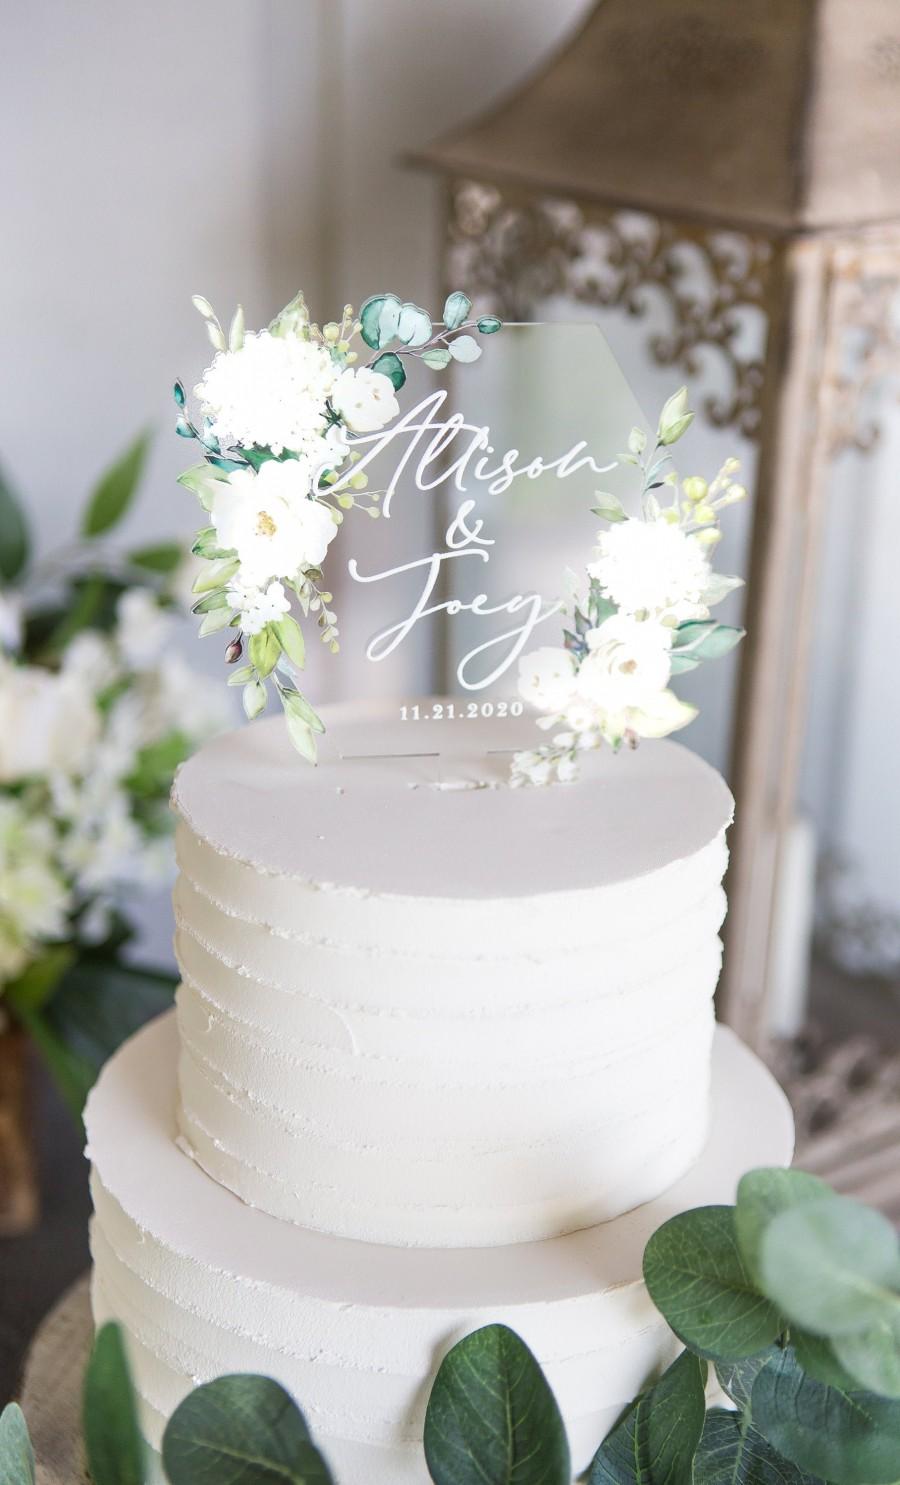 زفاف - Wedding Cake Topper Clear Acrylic Floral Personalized Cake Topper Wedding Decor with Names Modern Classic Cake Topper (Item - CHR949)